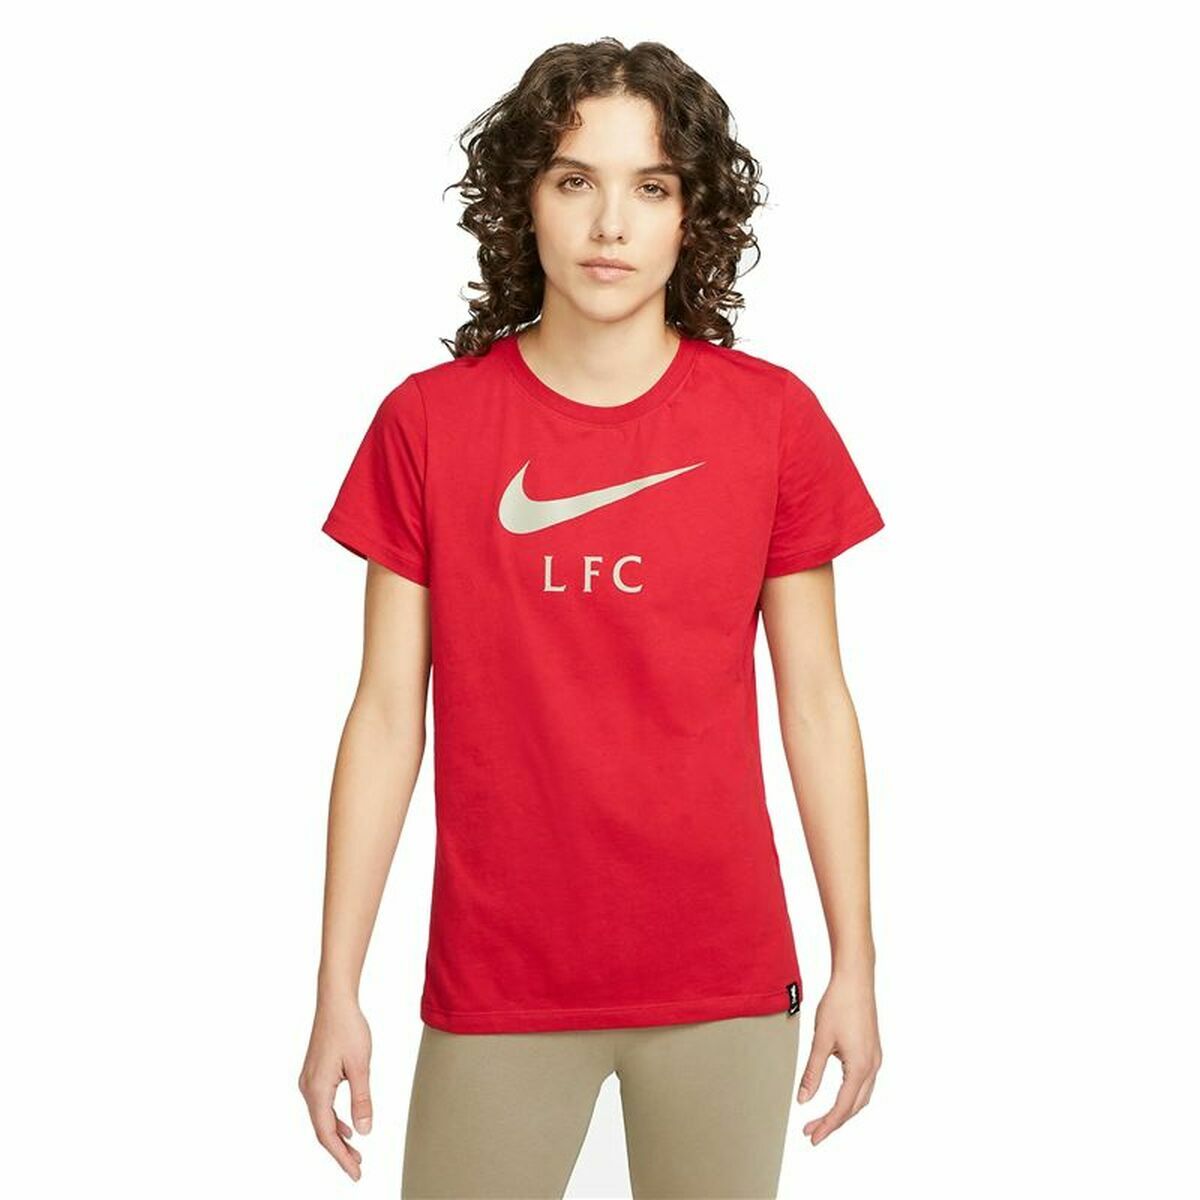 Osta tuote Naisten T-paita Nike Liverpool FC Punainen (Koko: M) verkkokaupastamme Korhone: Urheilu & Vapaa-aika 20% alennuksella koodilla VIIKONLOPPU